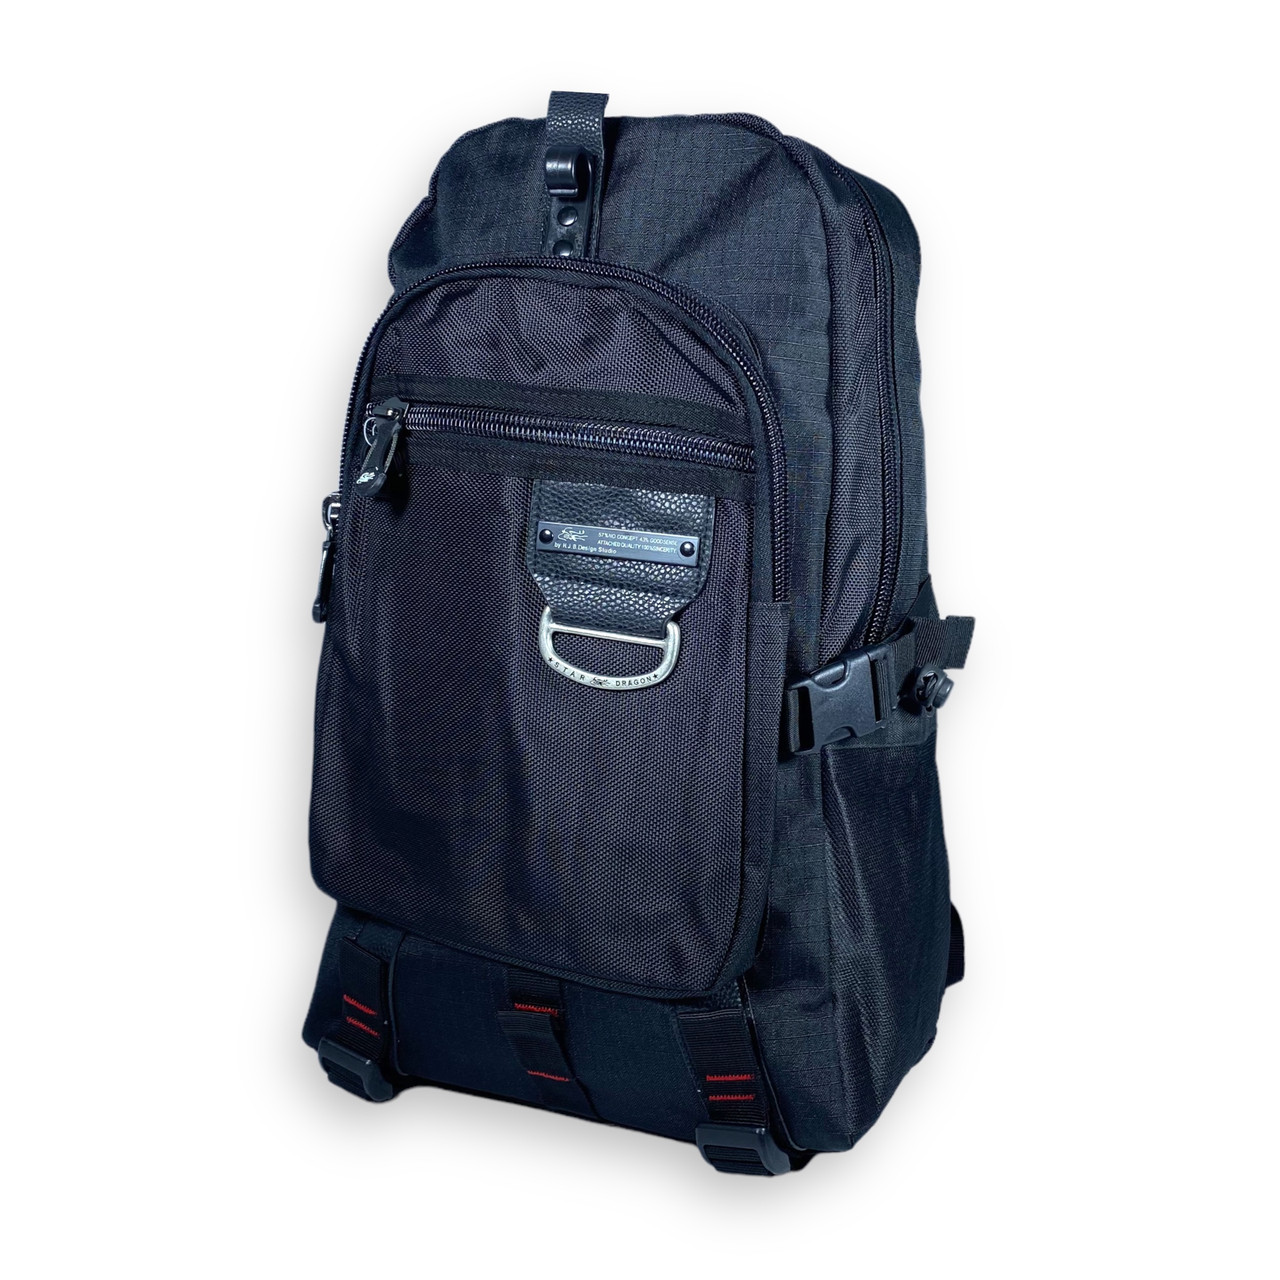 Міський рюкзак, 21 л, поліестер, один відділ, дві фронтальні кишені, розмір: 45*30*16 см, чорний, фото 1